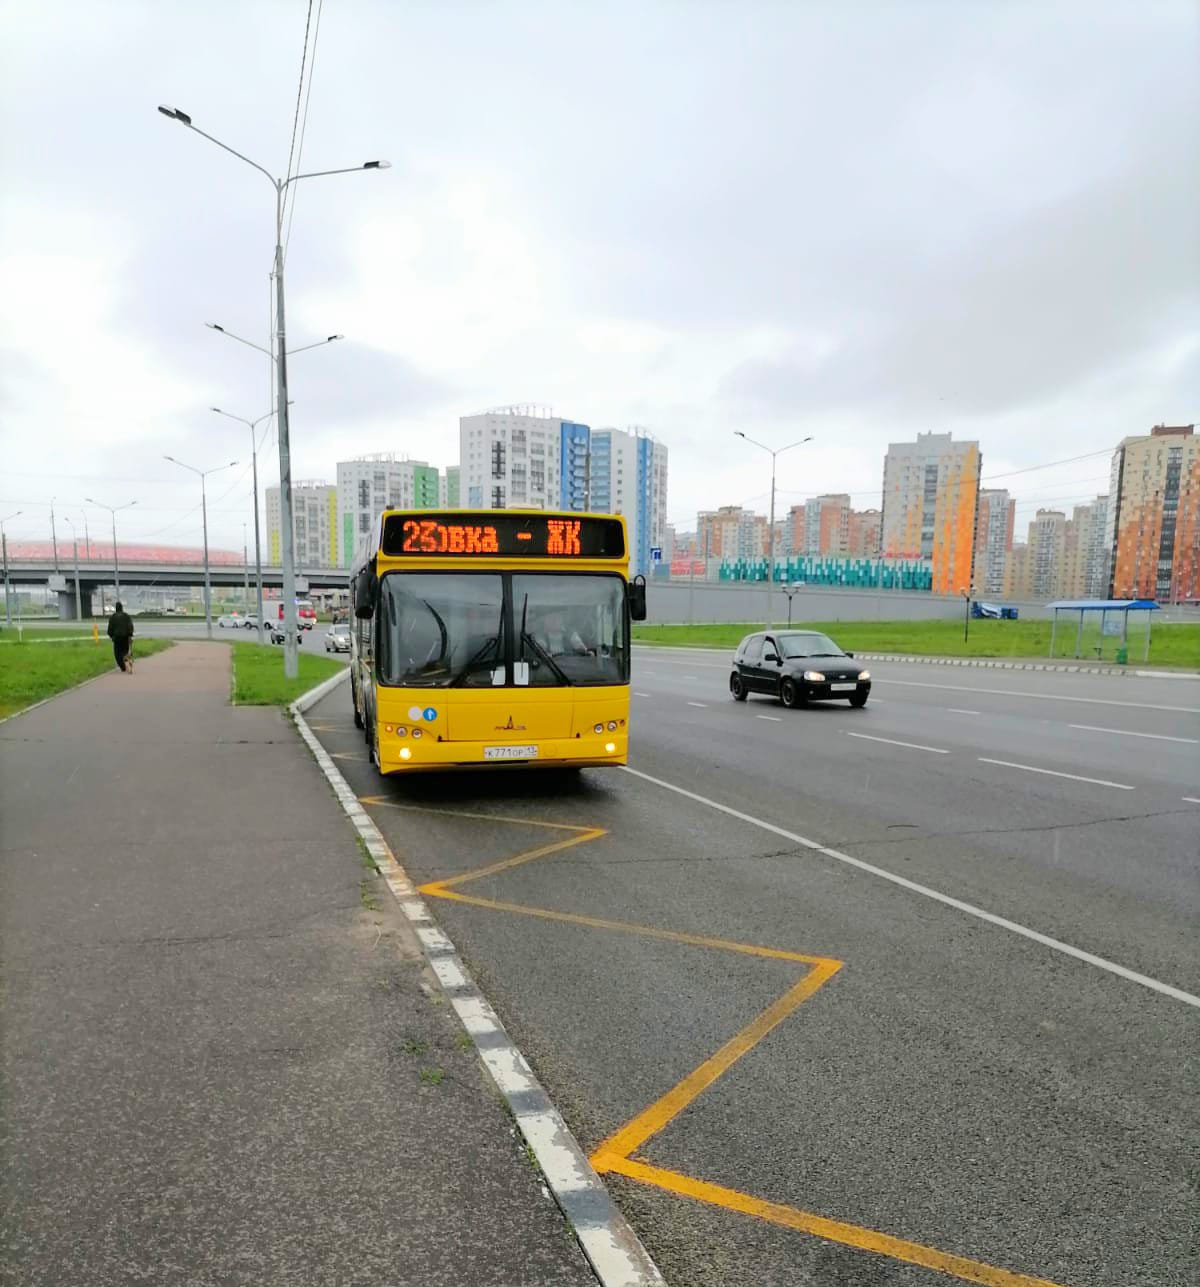 В Саранске возобновил работу автобусный маршрут №23